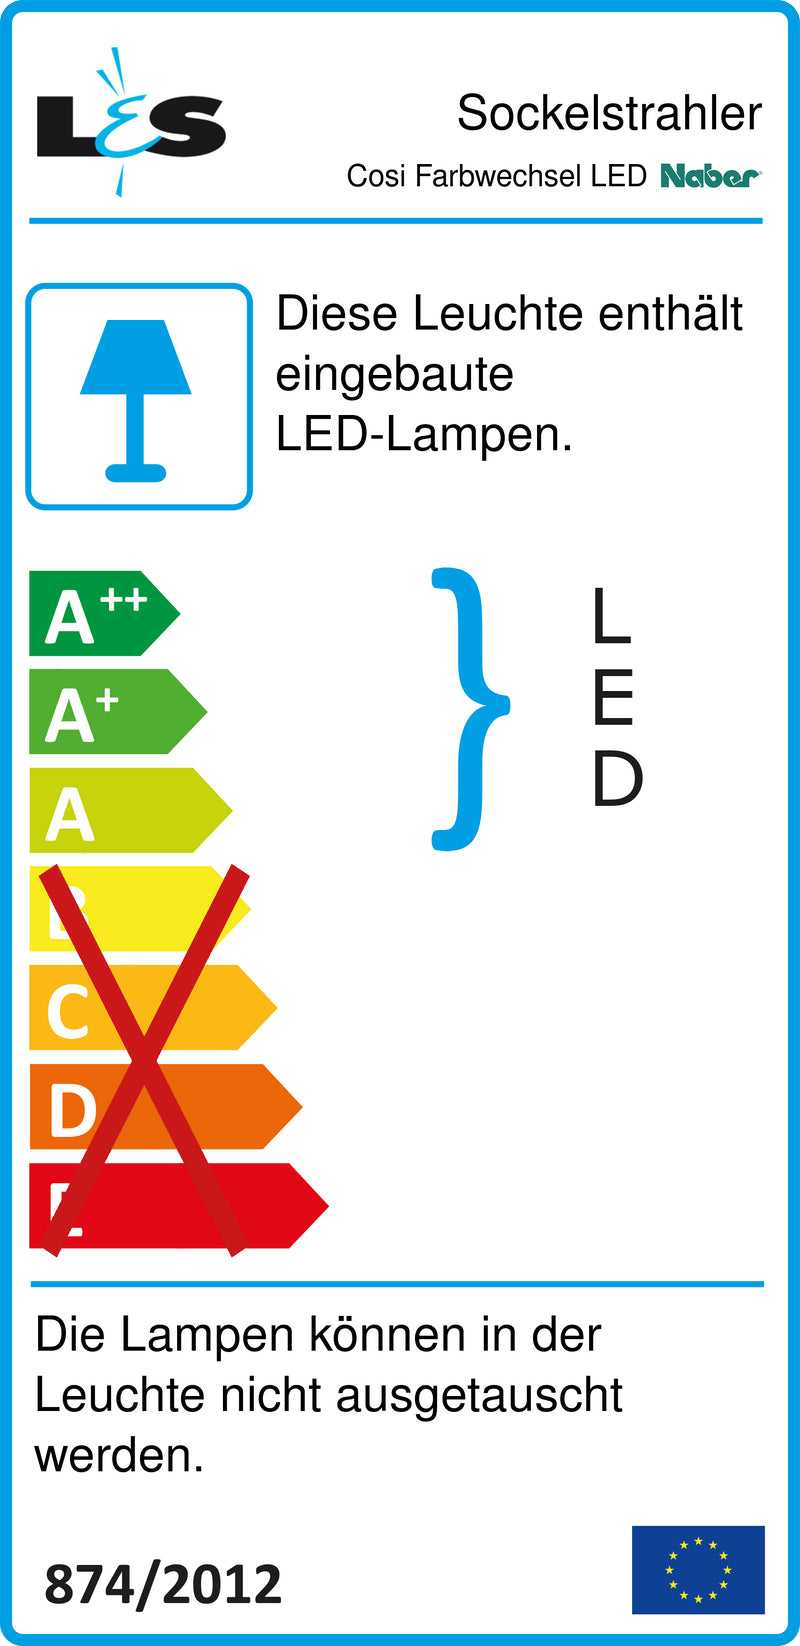 E-Label zu Zeichnung zu Cosi Farbwechsel LED als Variante Set-3 von Naber GmbH in der Kategorie Lichttechnik in Österreich auf conceptshop.at